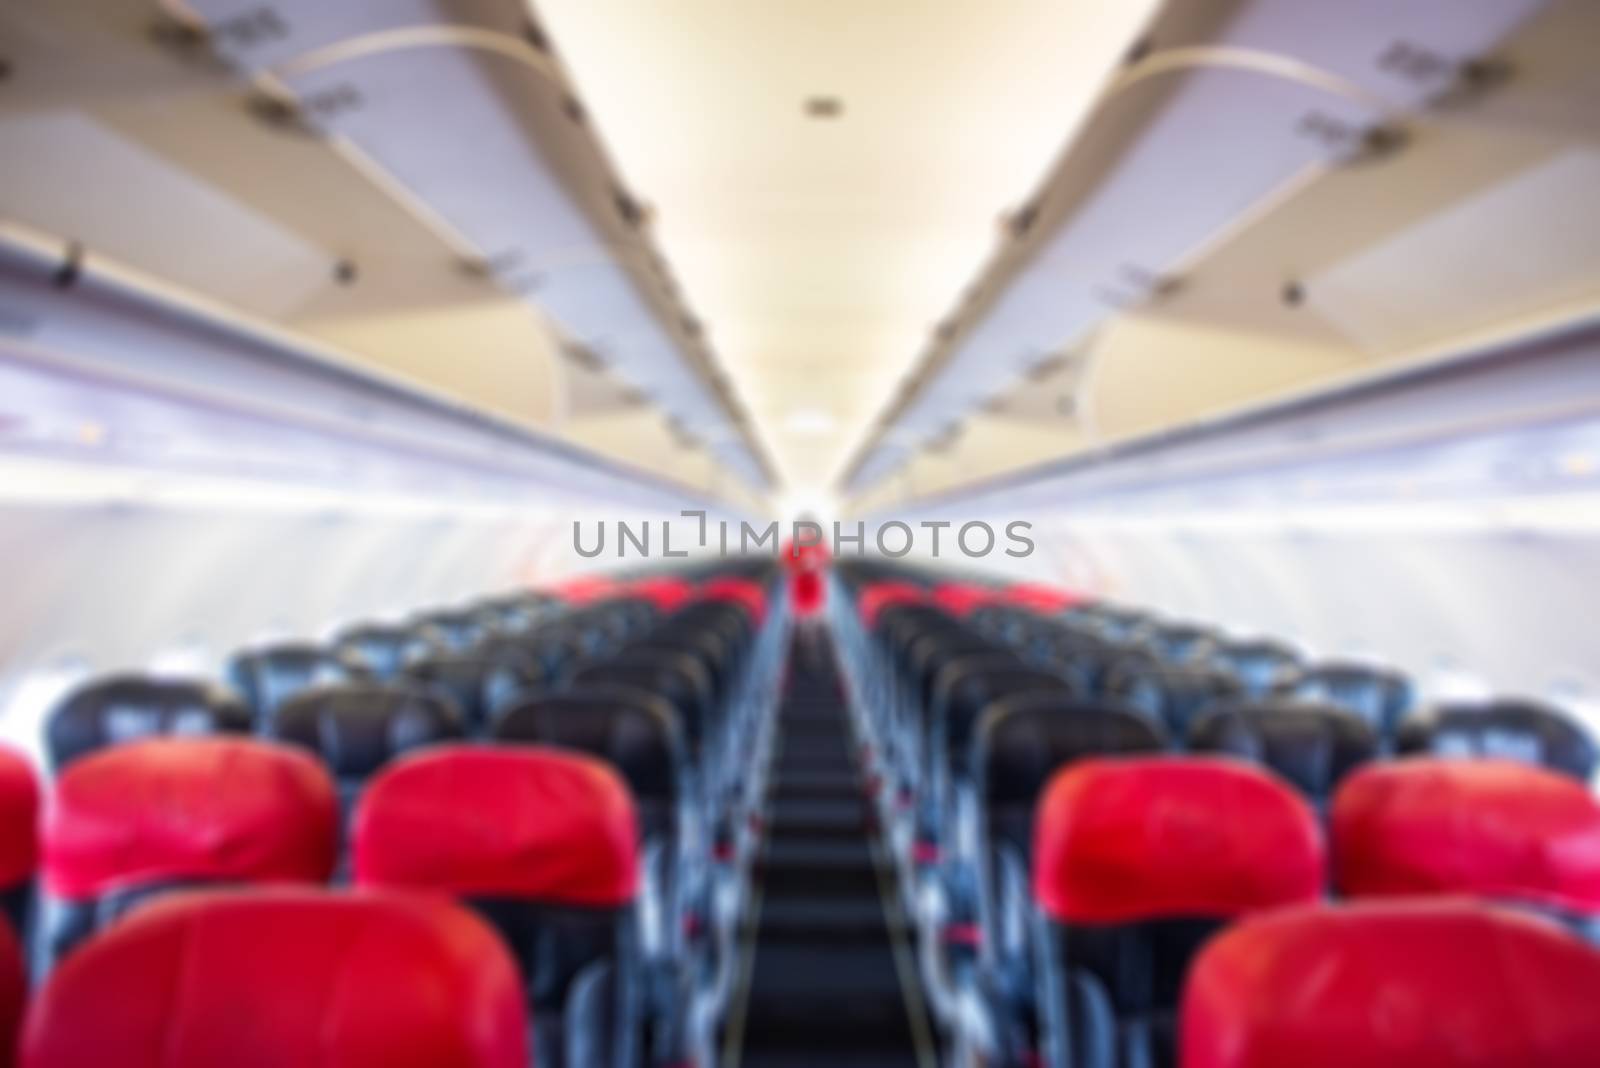 defocus  interior of the passenger airplane